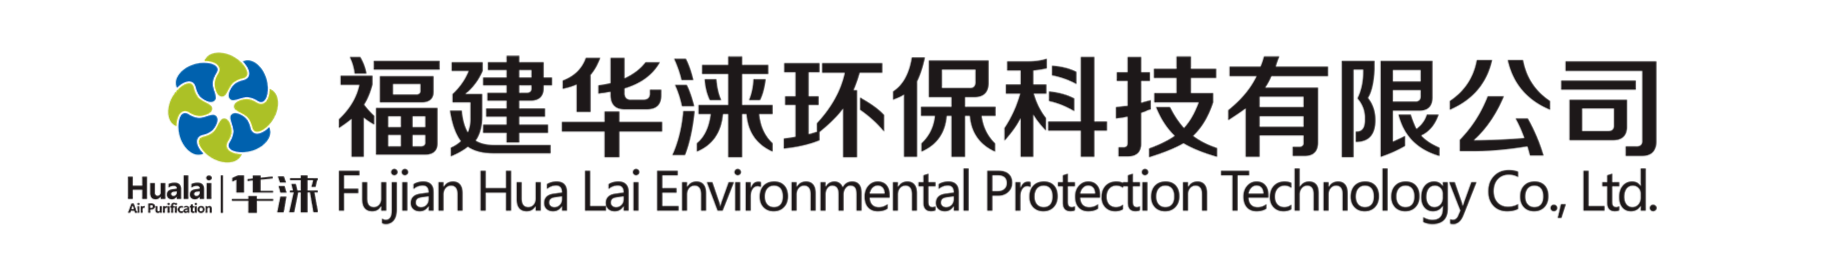 弯头-福建华涞环保科技有限公司